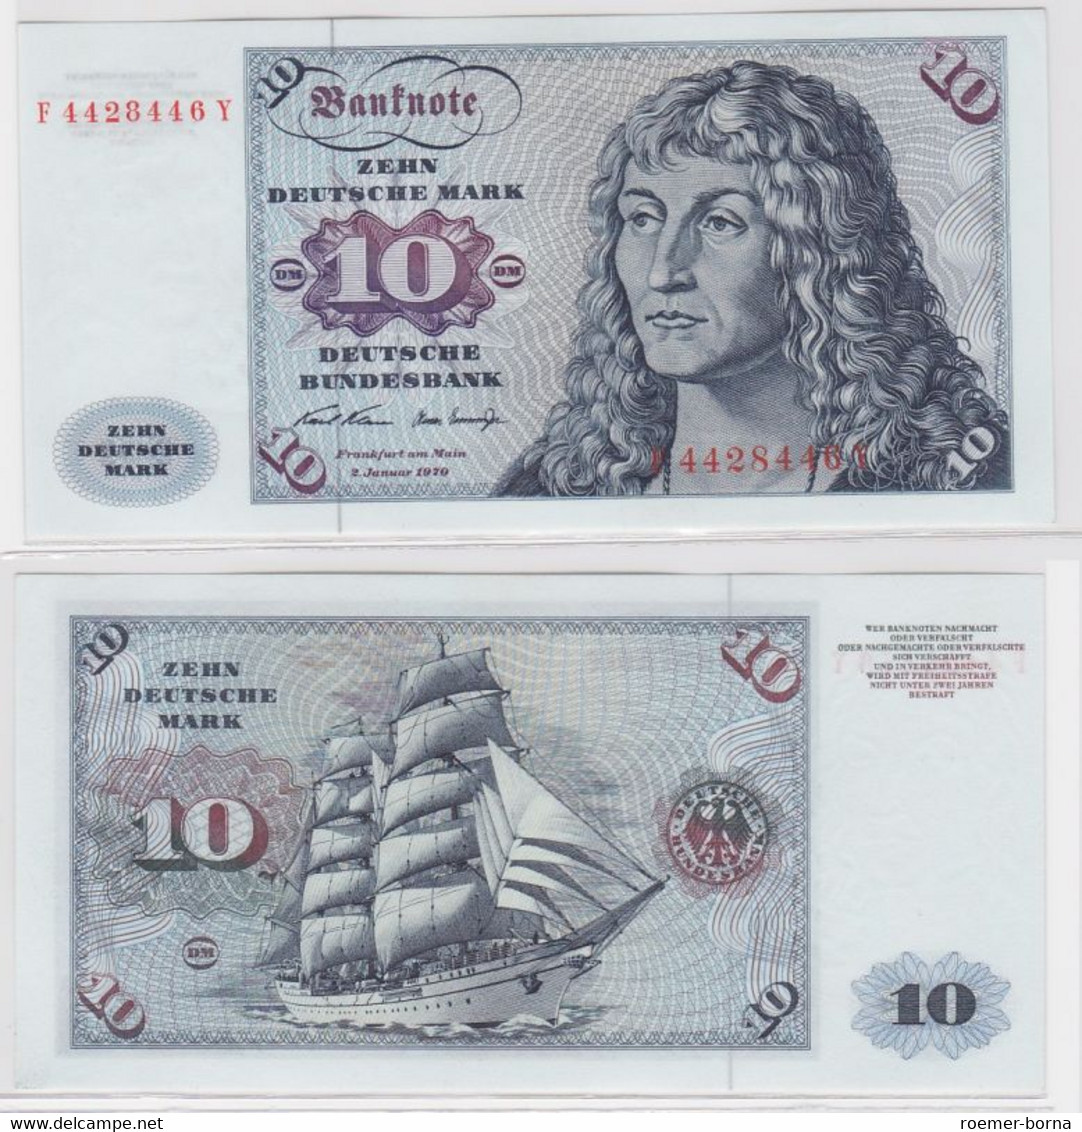 T146531 Banknote 10 DM Deutsche Mark Ro. 270a Schein 2.Jan. 1970 KN F 4428446 Y - 10 Deutsche Mark